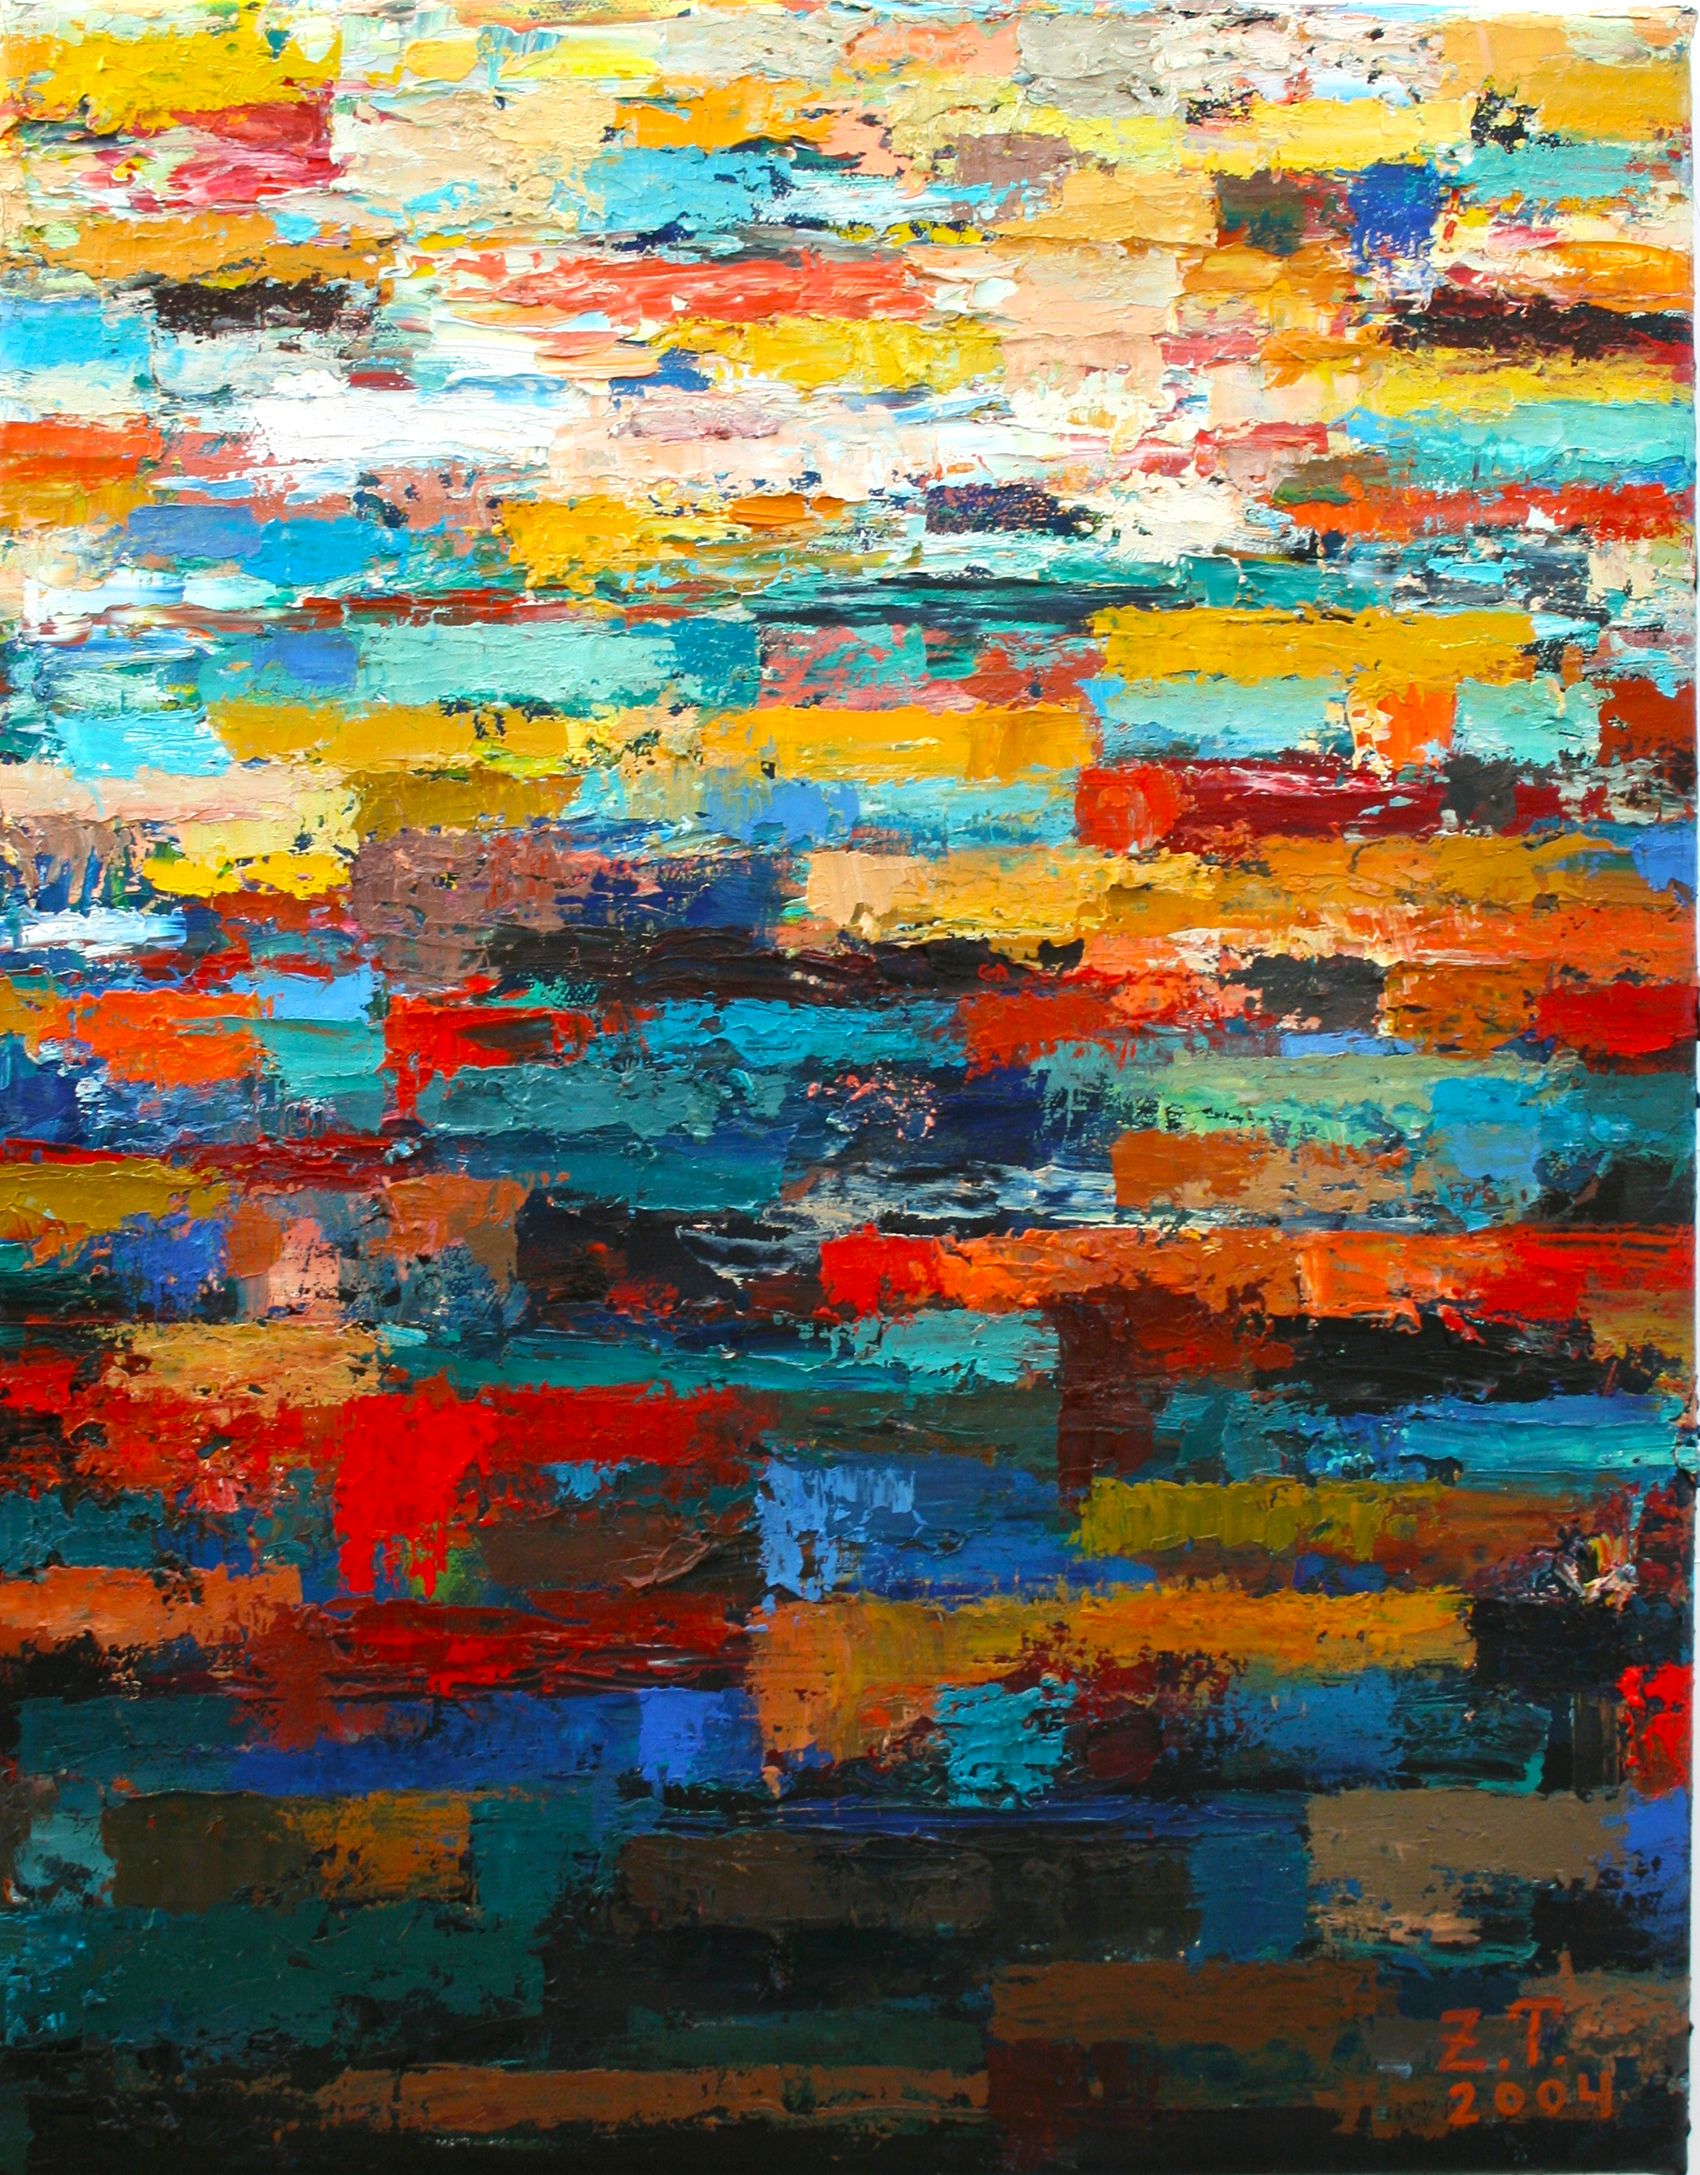 Landschaft | Landscape | 2004 Öl auf Leinwand 46 X 36cm